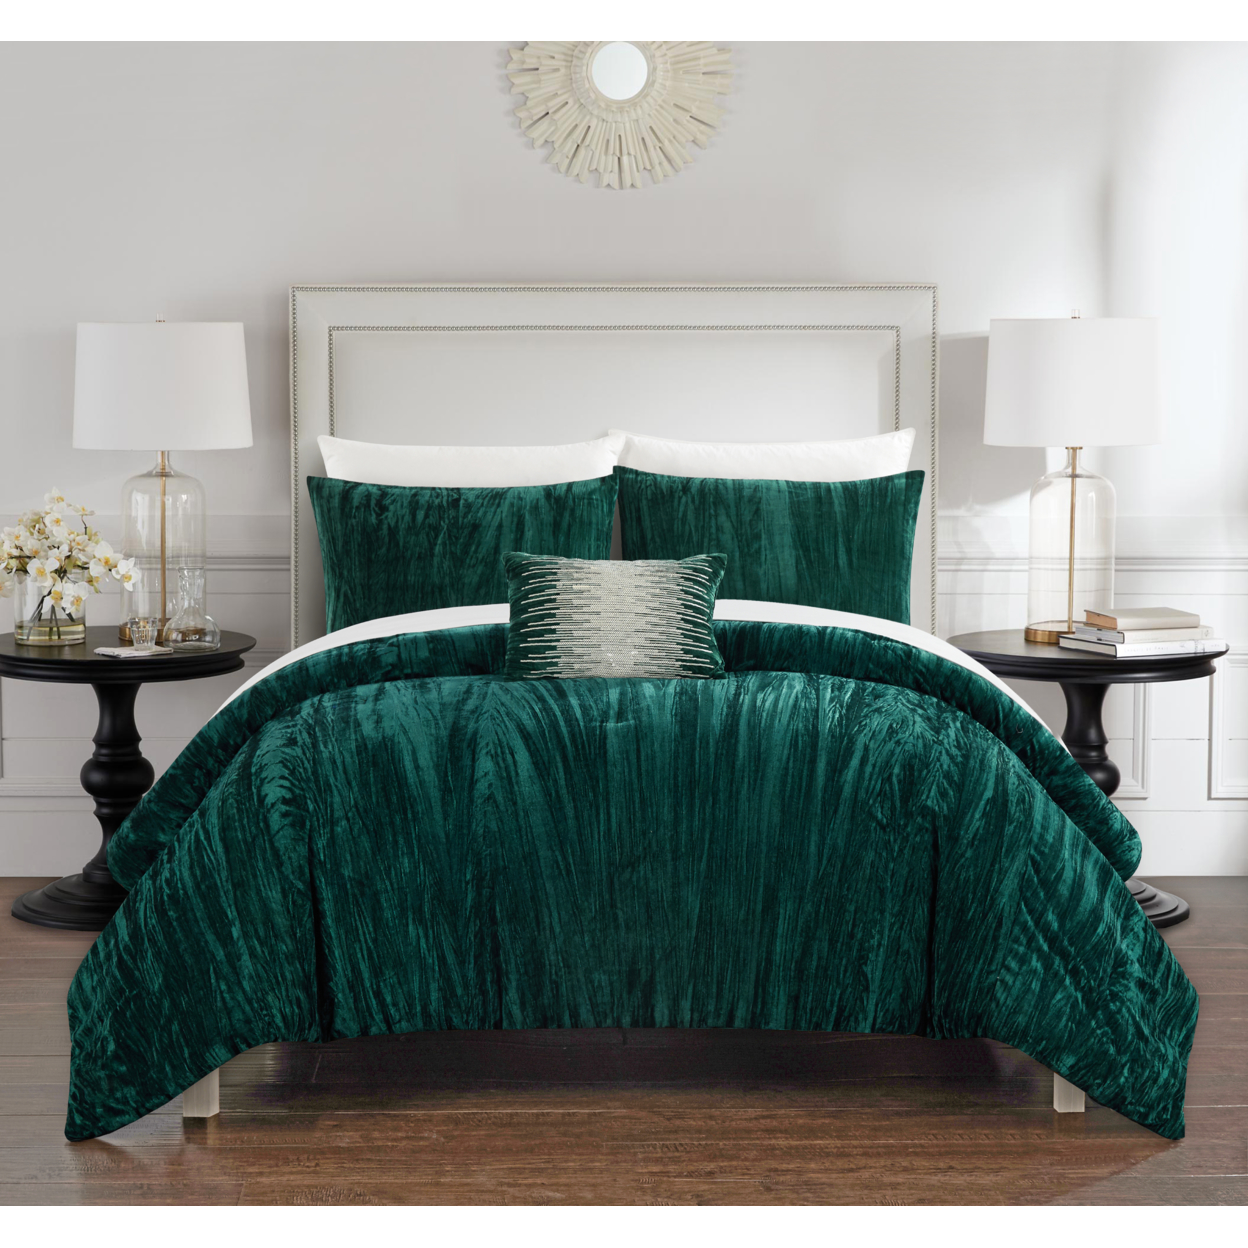 Merieta 4 Piece Comforter Set Crinkle Crushed Velvet Bedding - Decorative Pillow Shams Included - Navy, Queen